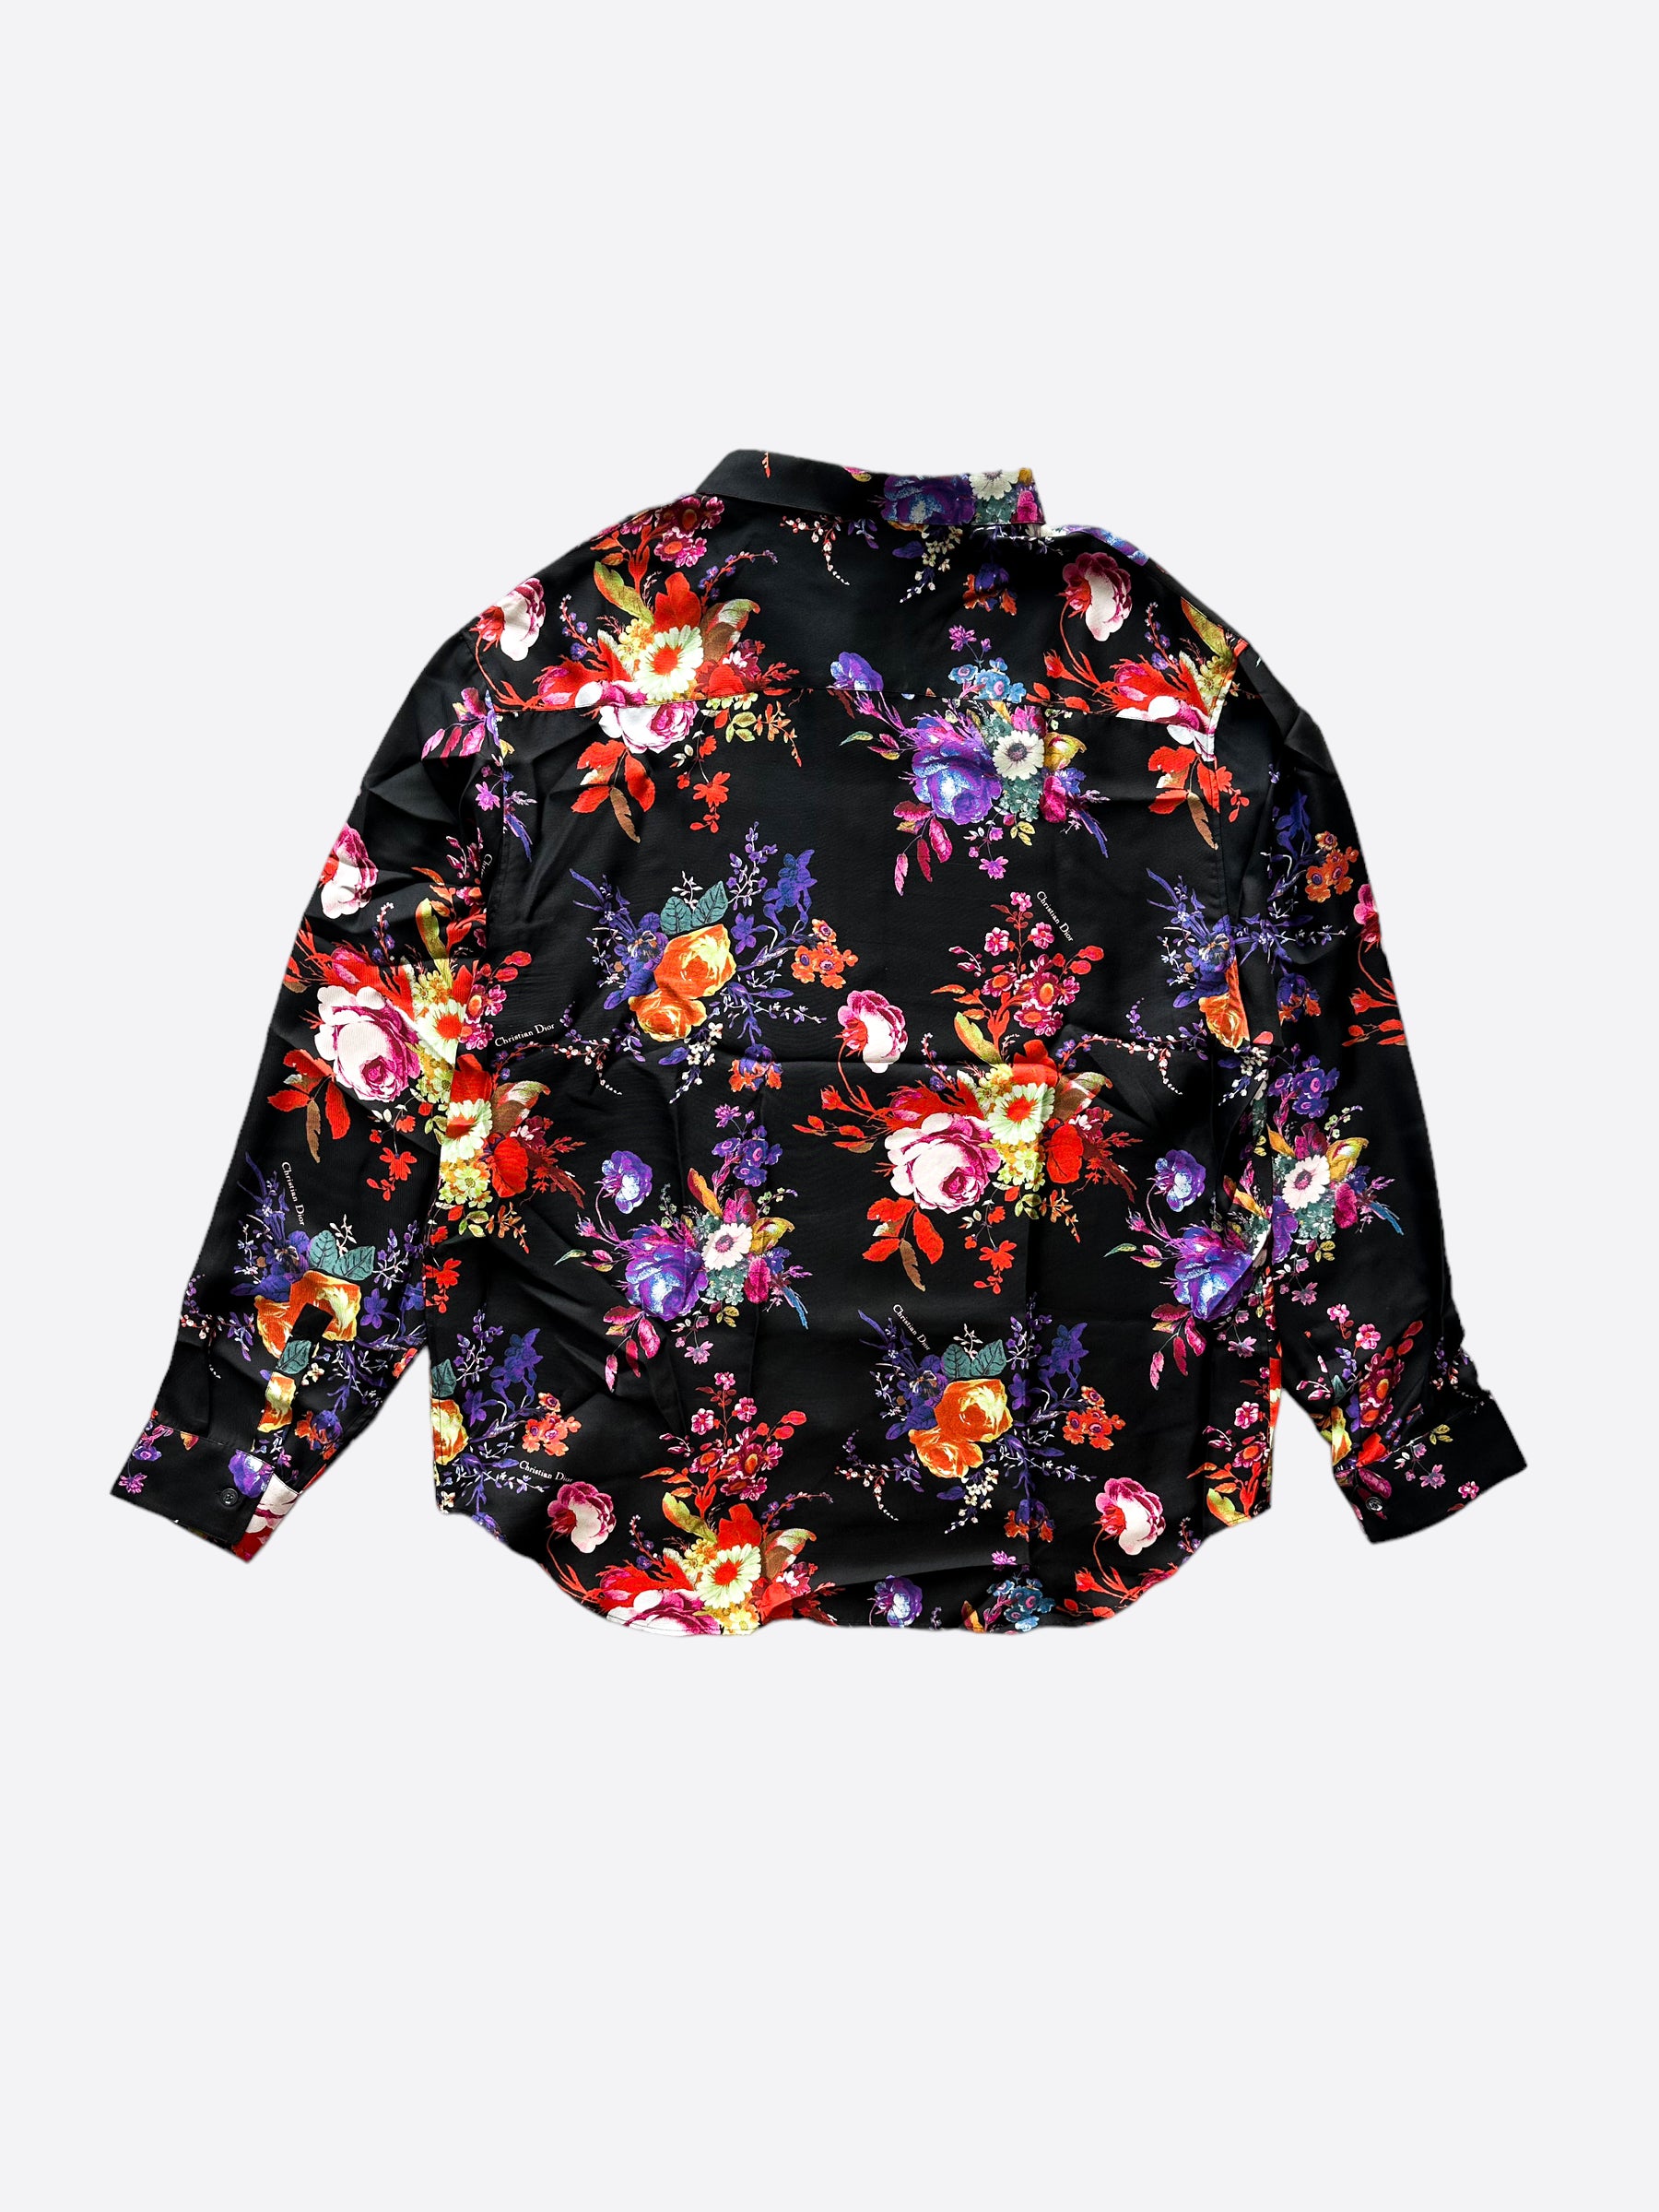 Dior Kaws Floral Print Silk Button Up Shirt